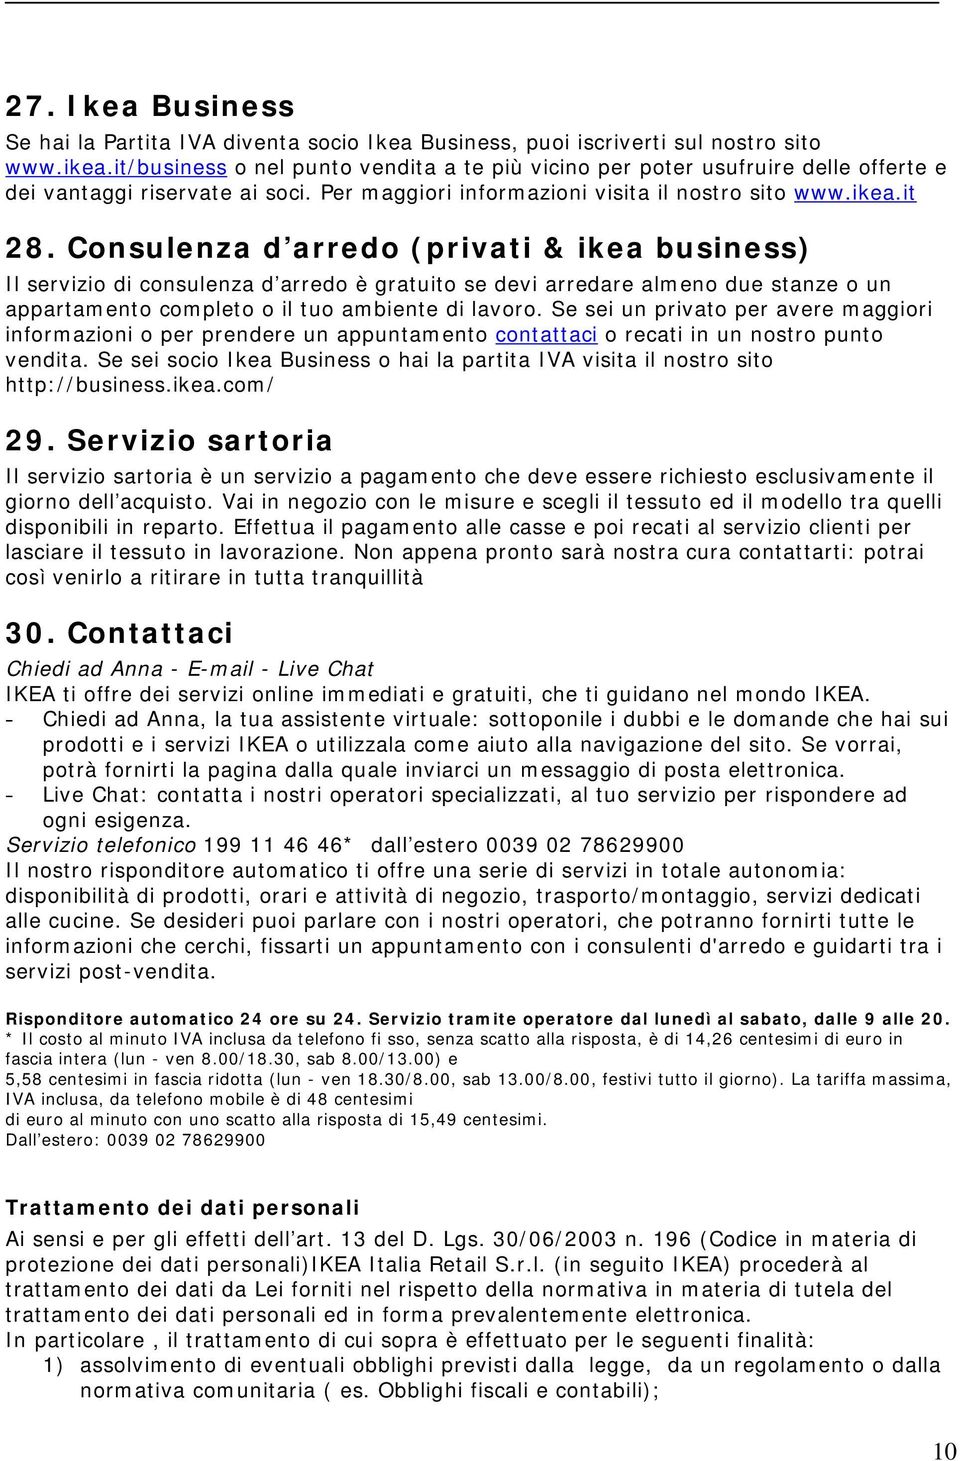 Condizioni Di Vendita Ikea Italia Pdf Download Gratuito